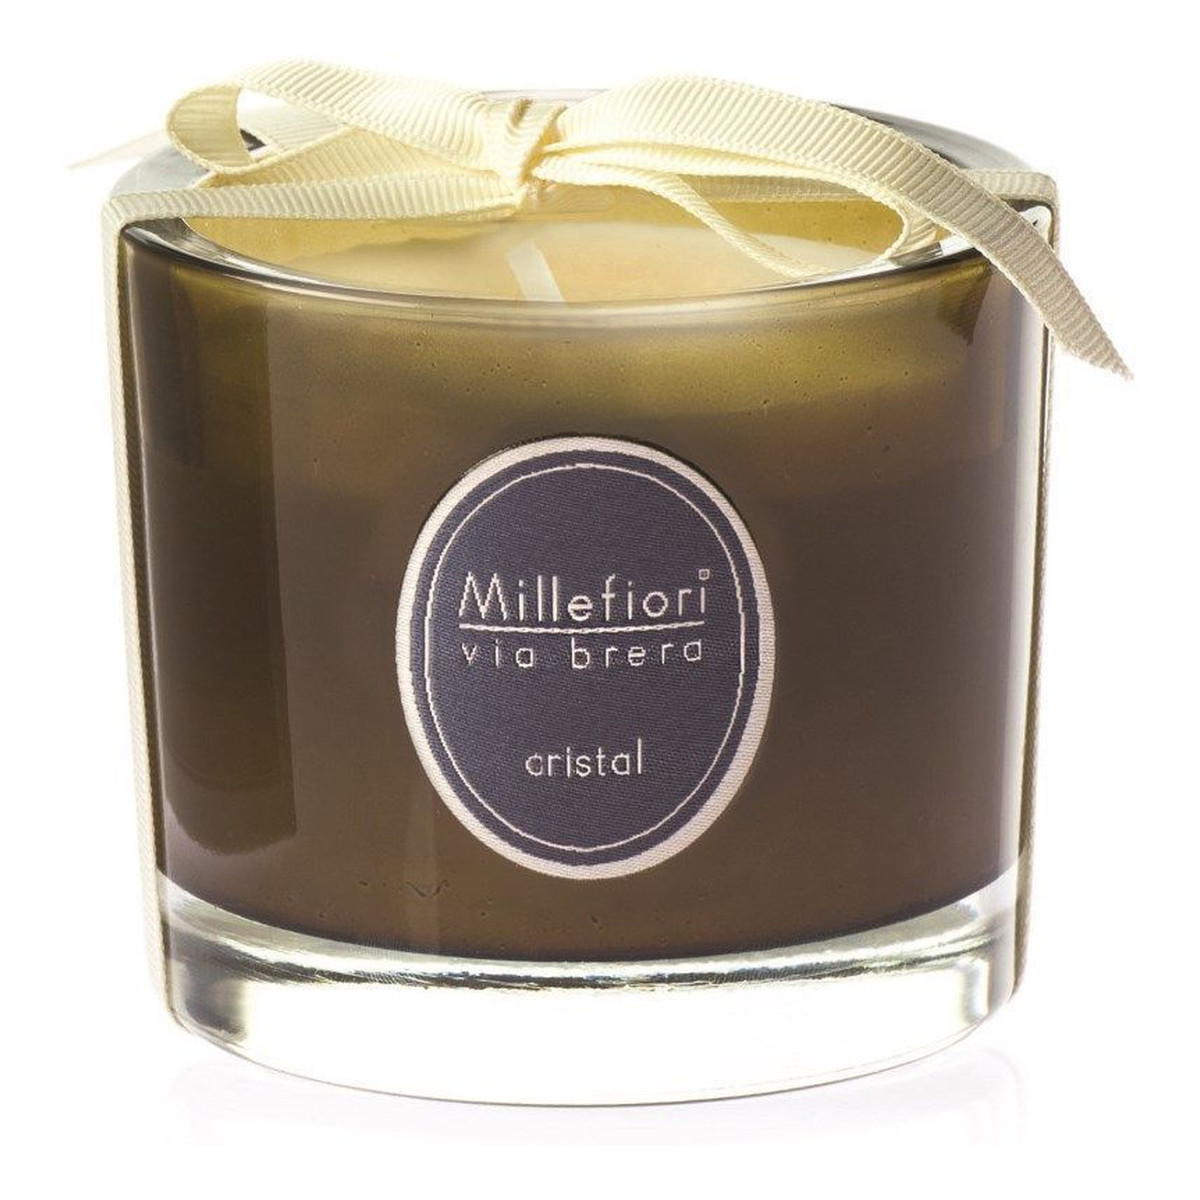 Millefiori Via Brera świeczka zapachowa Cristal 180g